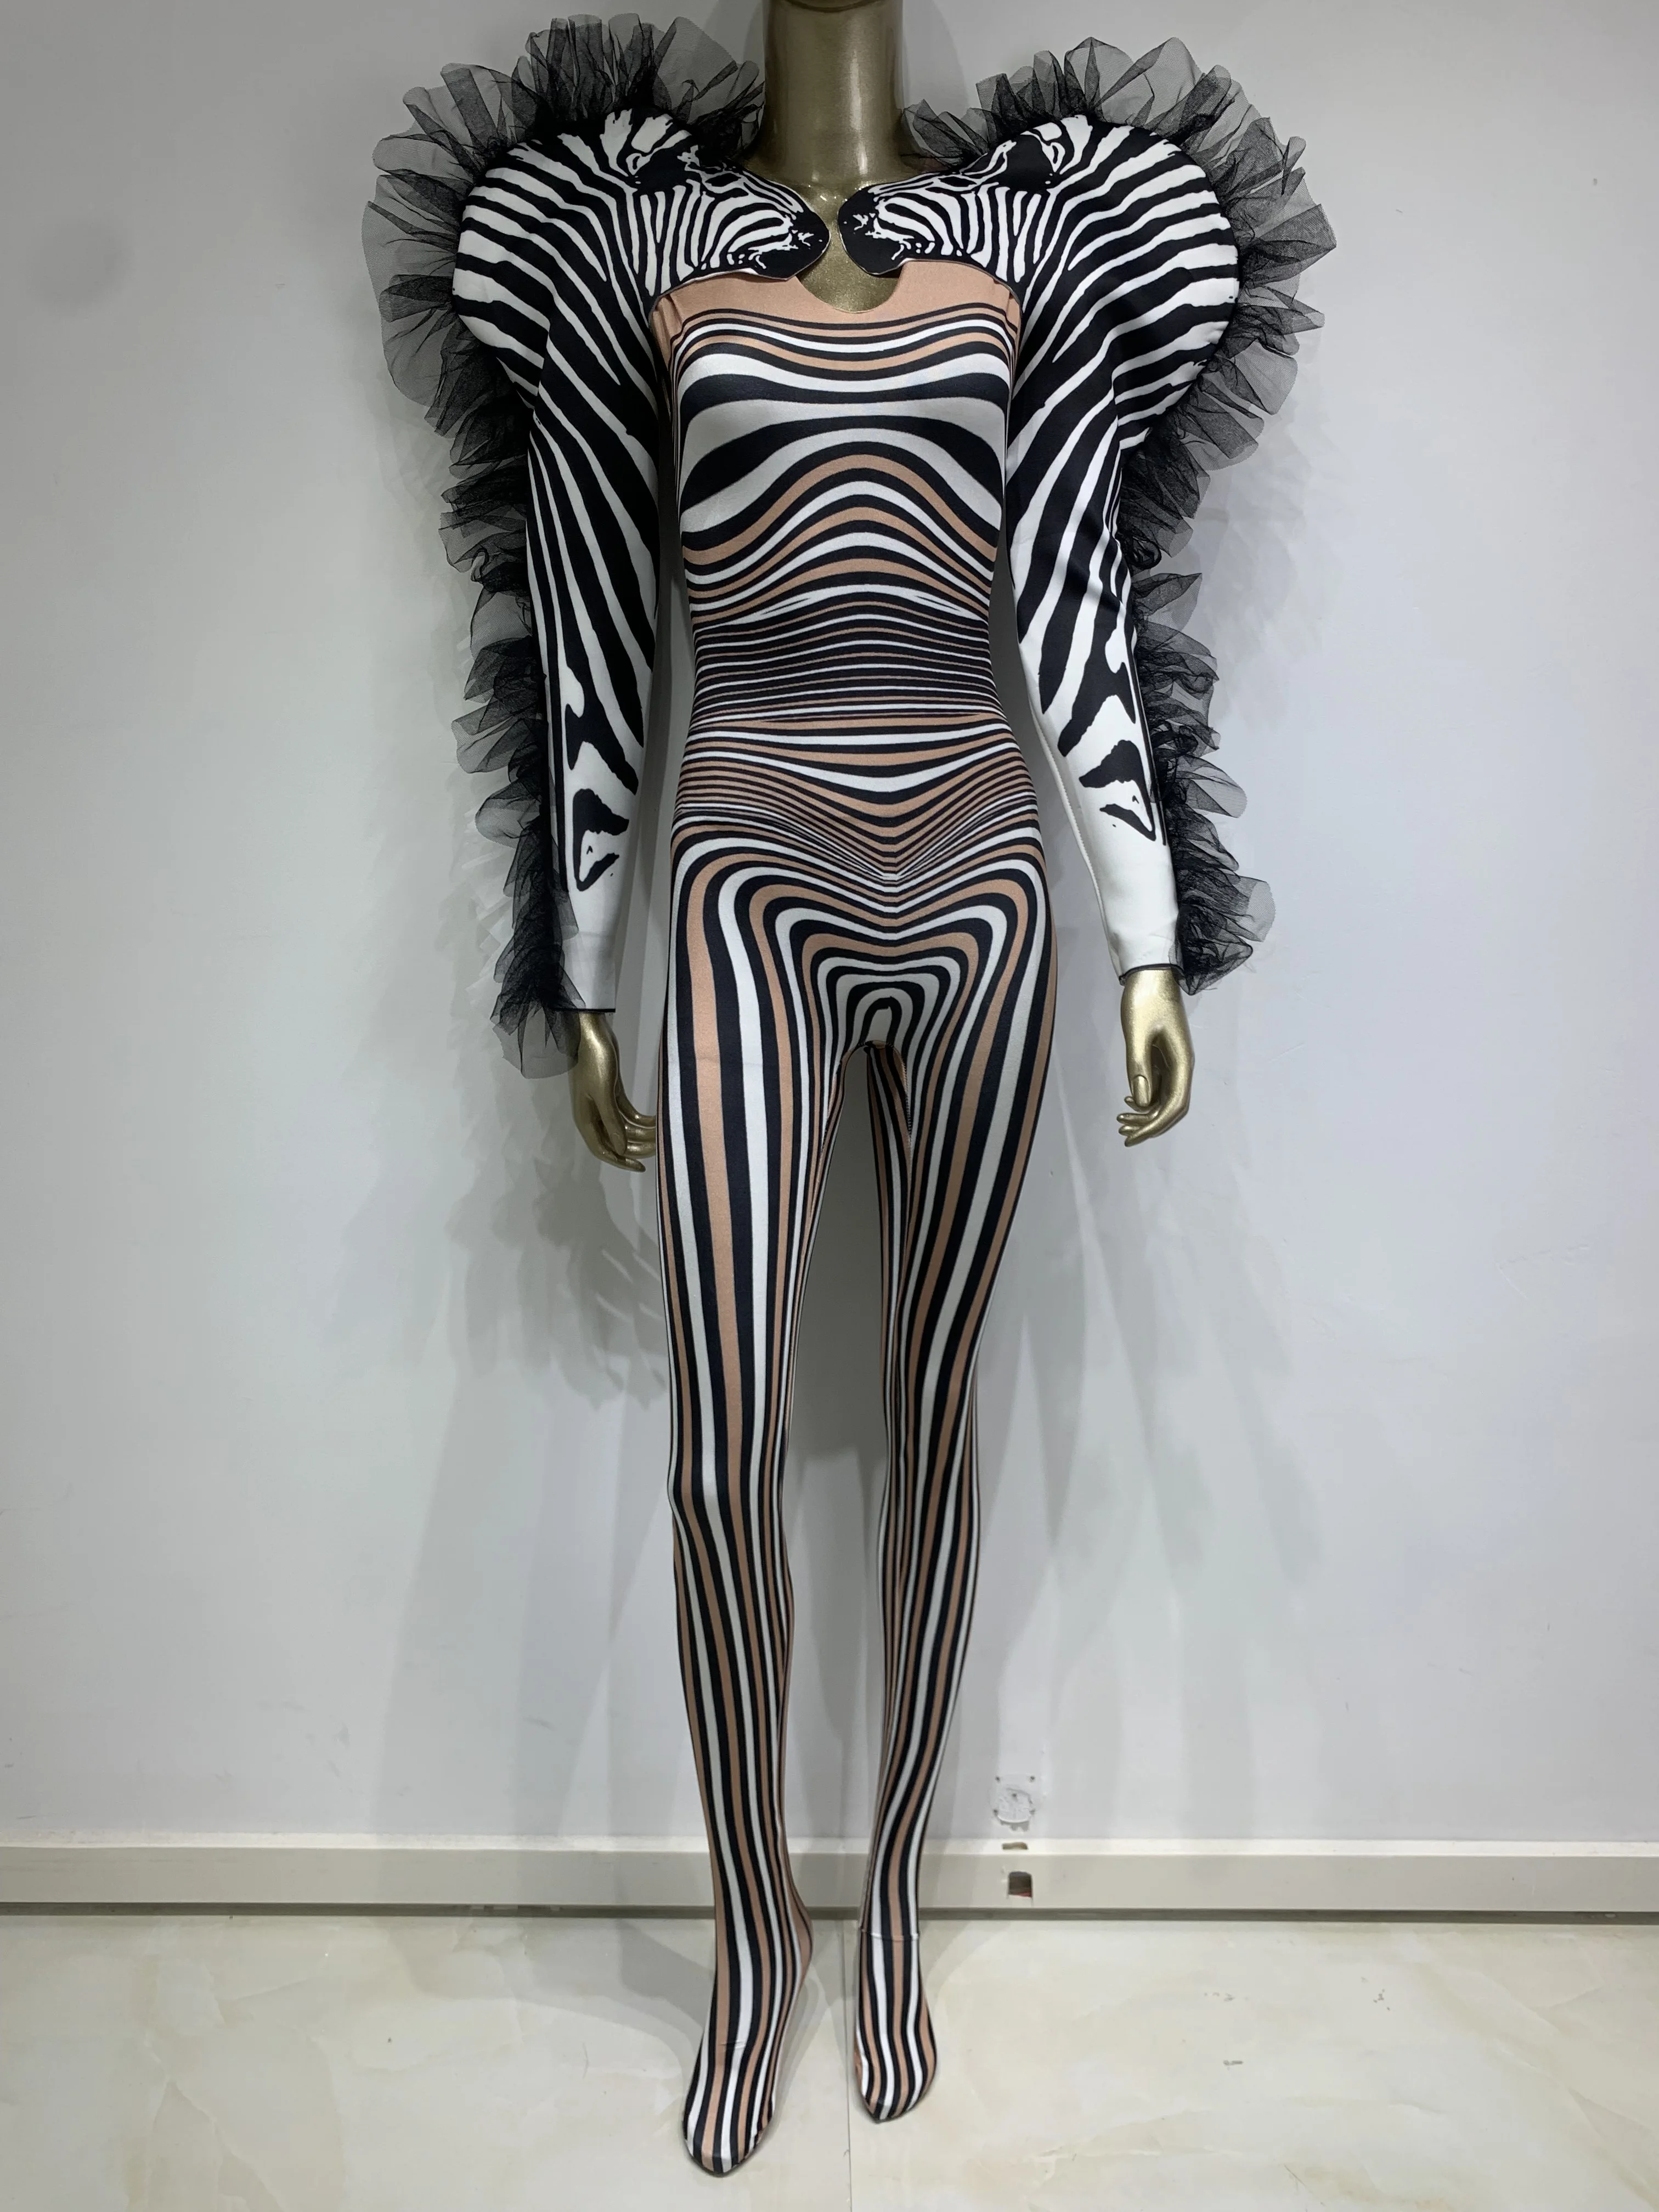 combinaison-a-volants-zebres-a-manches-longues-pour-femmes-barboteuses-de-performance-sur-scene-costume-de-fete-d'anniversaire-bar-boite-de-nuit-halloween-stock